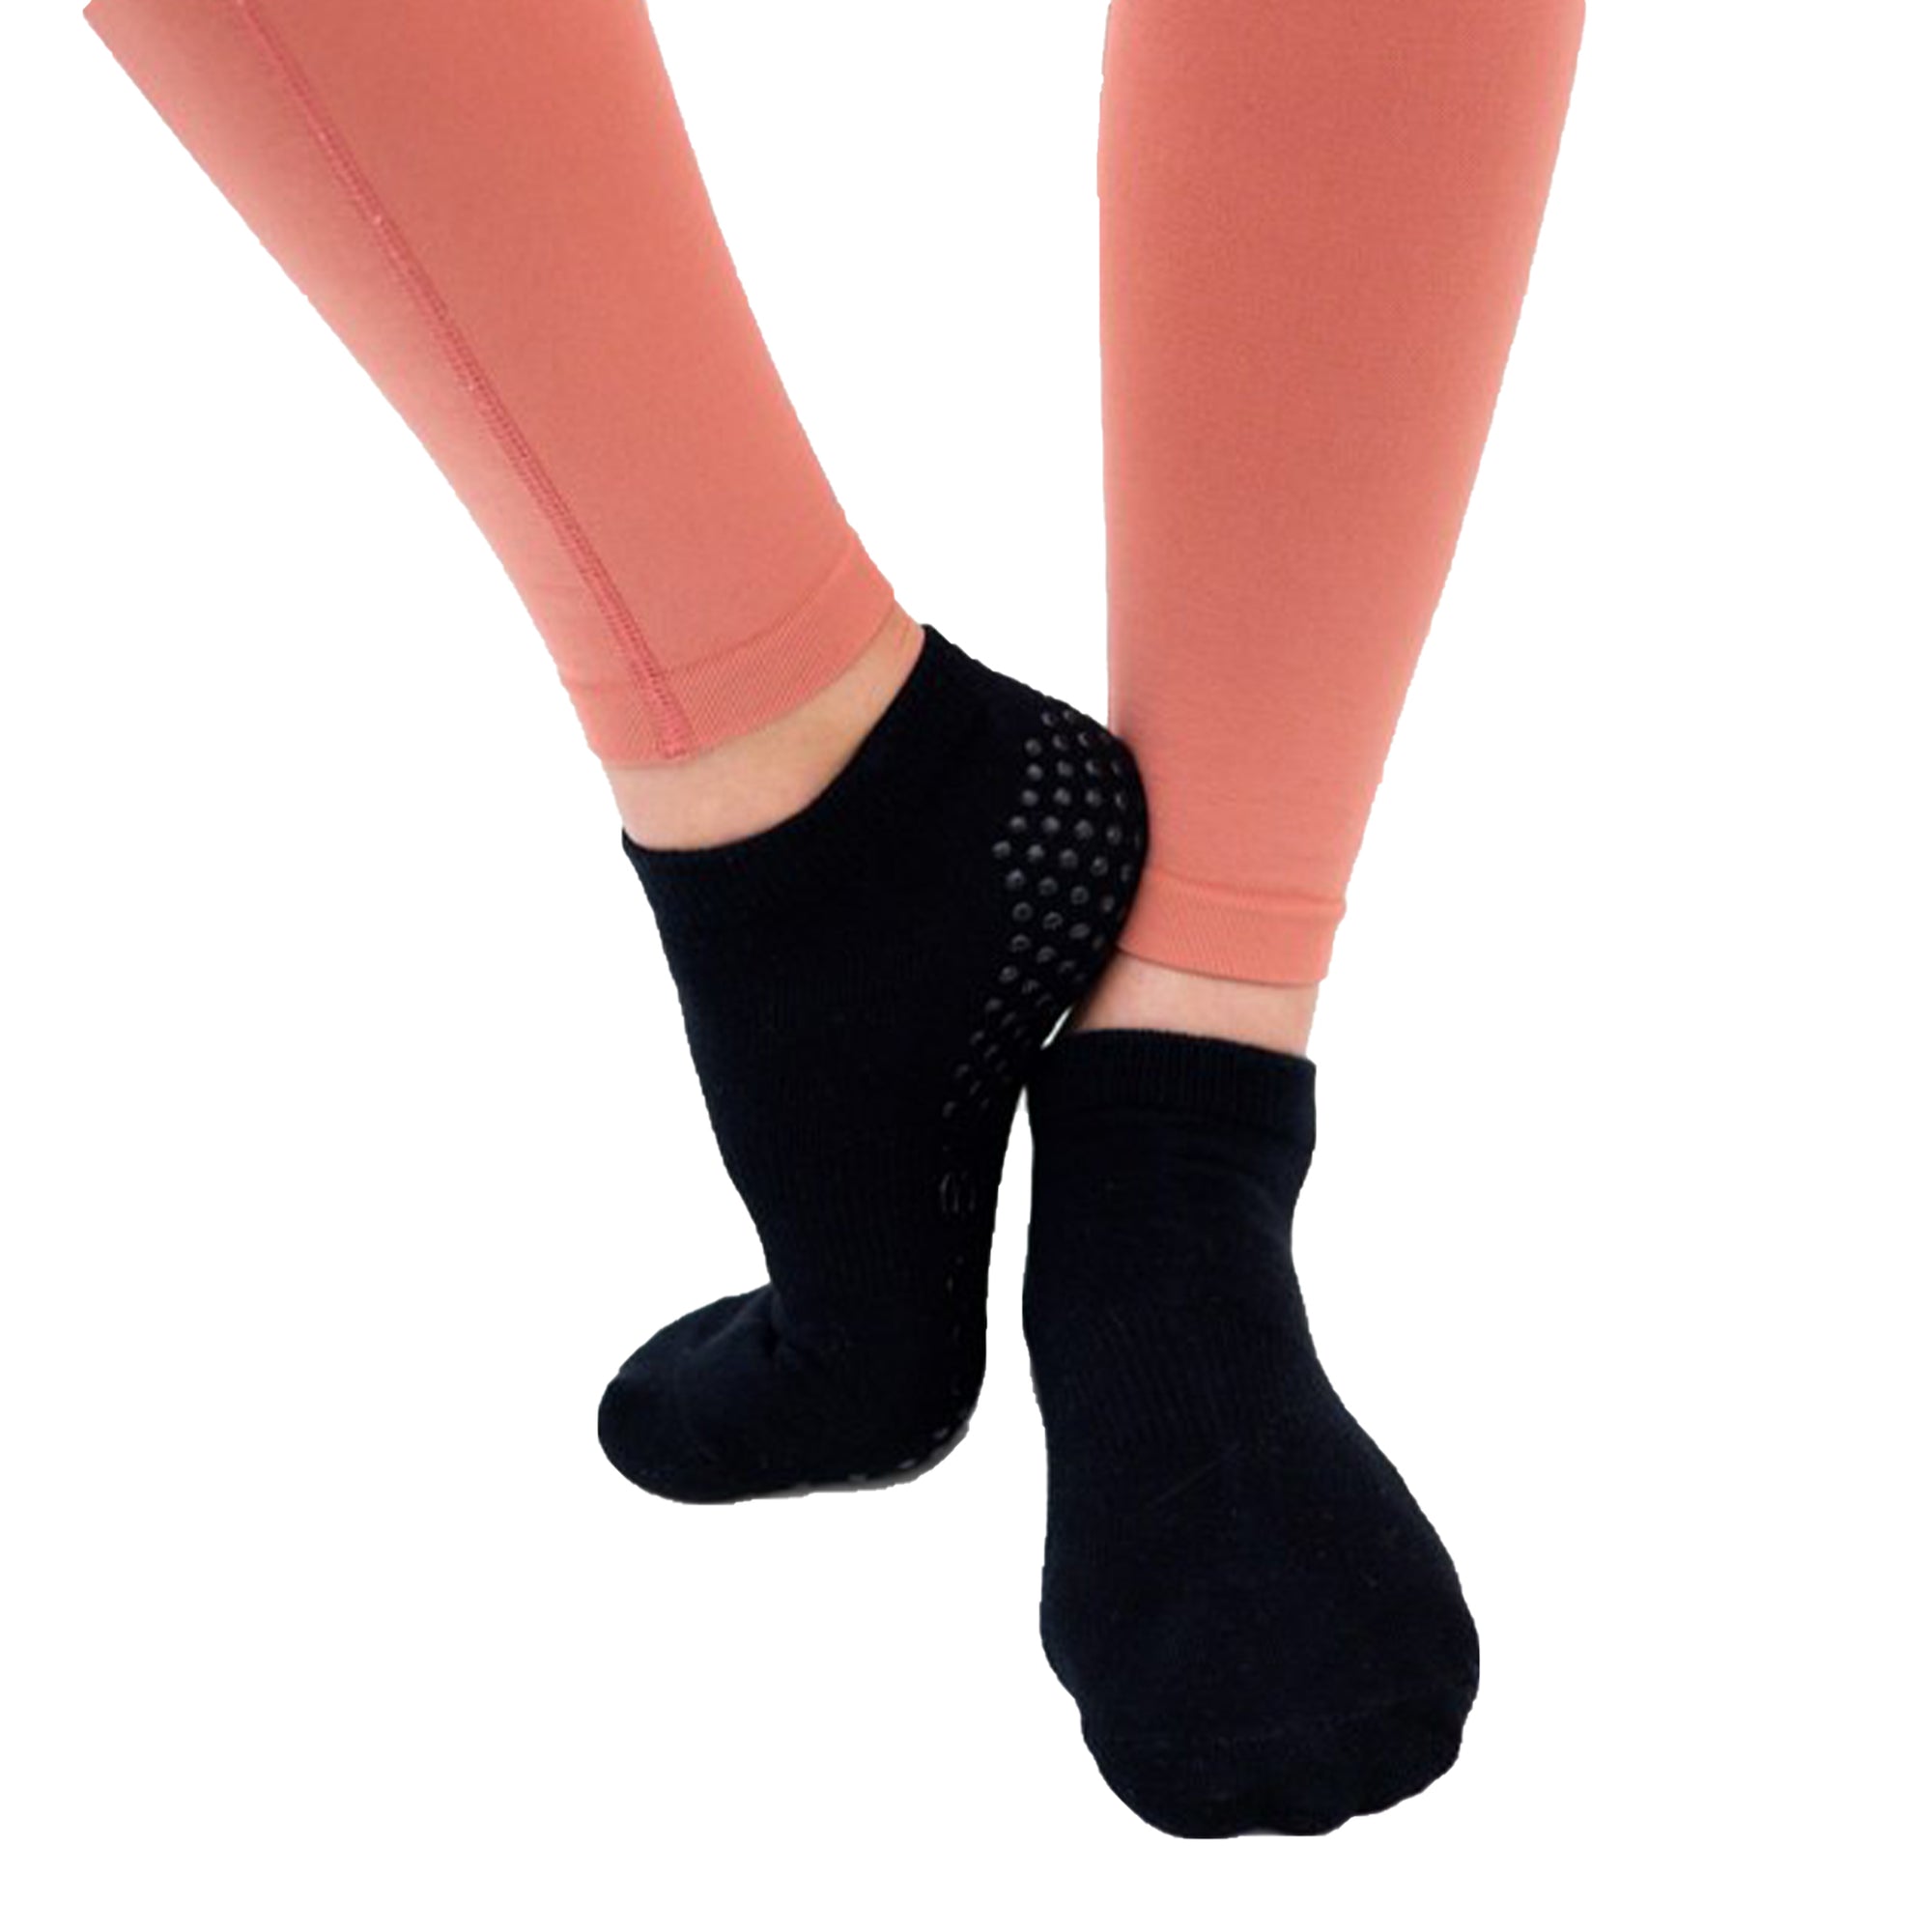 GRIPSOCKS Pilates Grip Socks- Non-Slip Socks for Women, Men, Youth - Yoga  Grip Socks, Reformer Socks, Barre